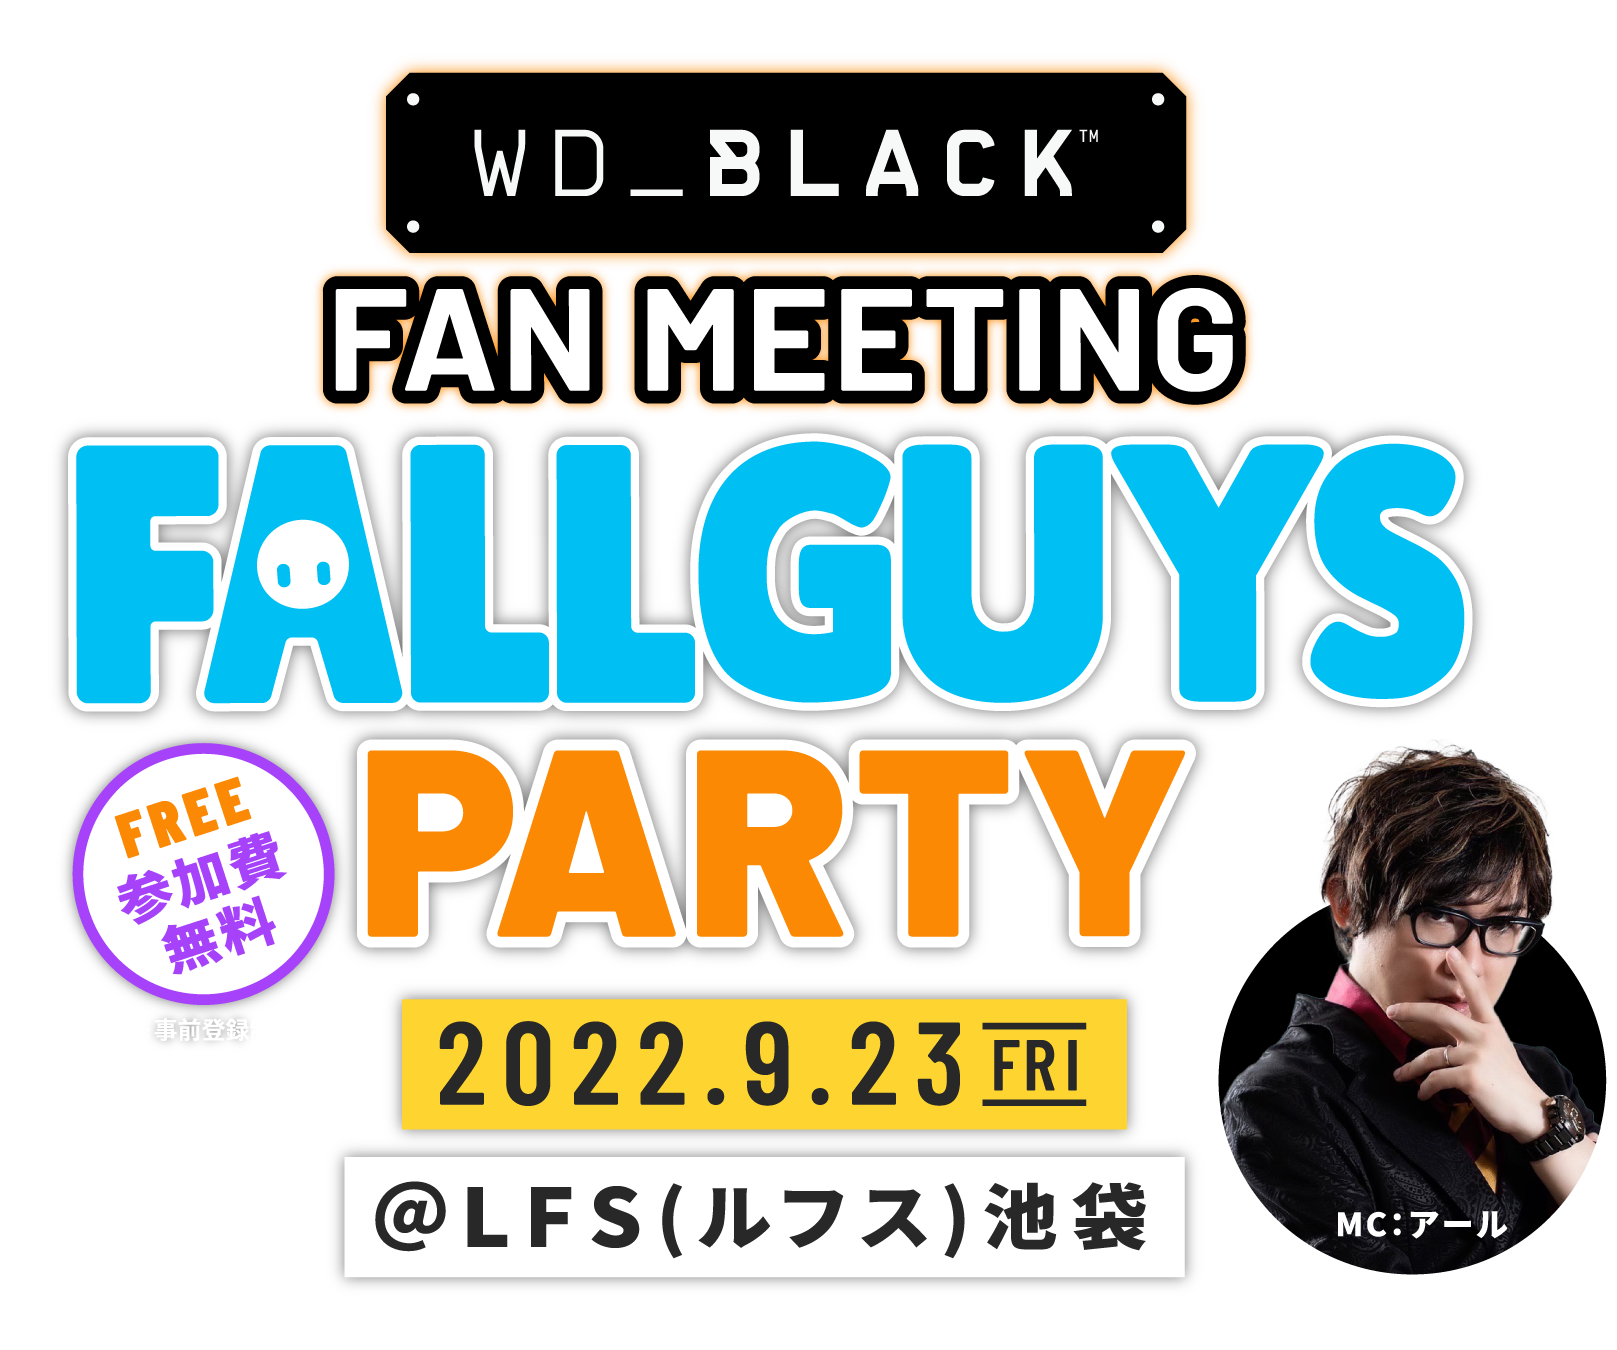 WD_BLACK FAN MEETING “FALL GUYS” PARTY 2022.9.23 FRI ＠LFS(ルフス)池袋